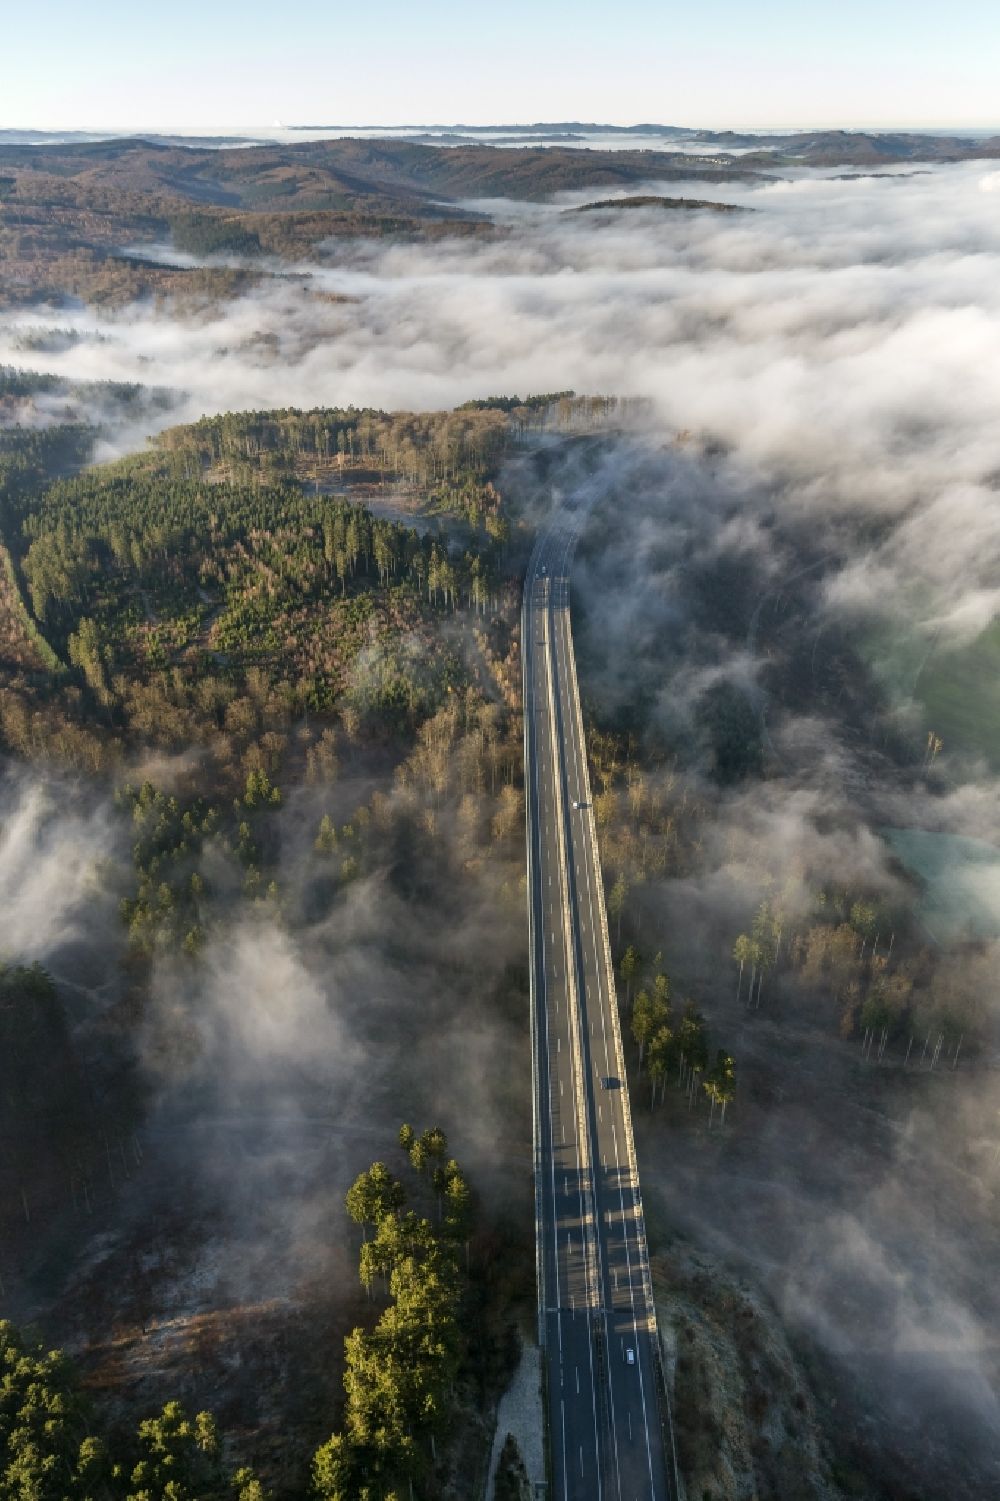 Luftaufnahme Arnsberg OT Oeventrop - Nebel umgebene Autobahnbrücke an der BAB Bundesautobahn A46 bei Oeventrop - einem Stadtteil von Arnsberg im Sauerland in Nordrhein-Westfalen NRW